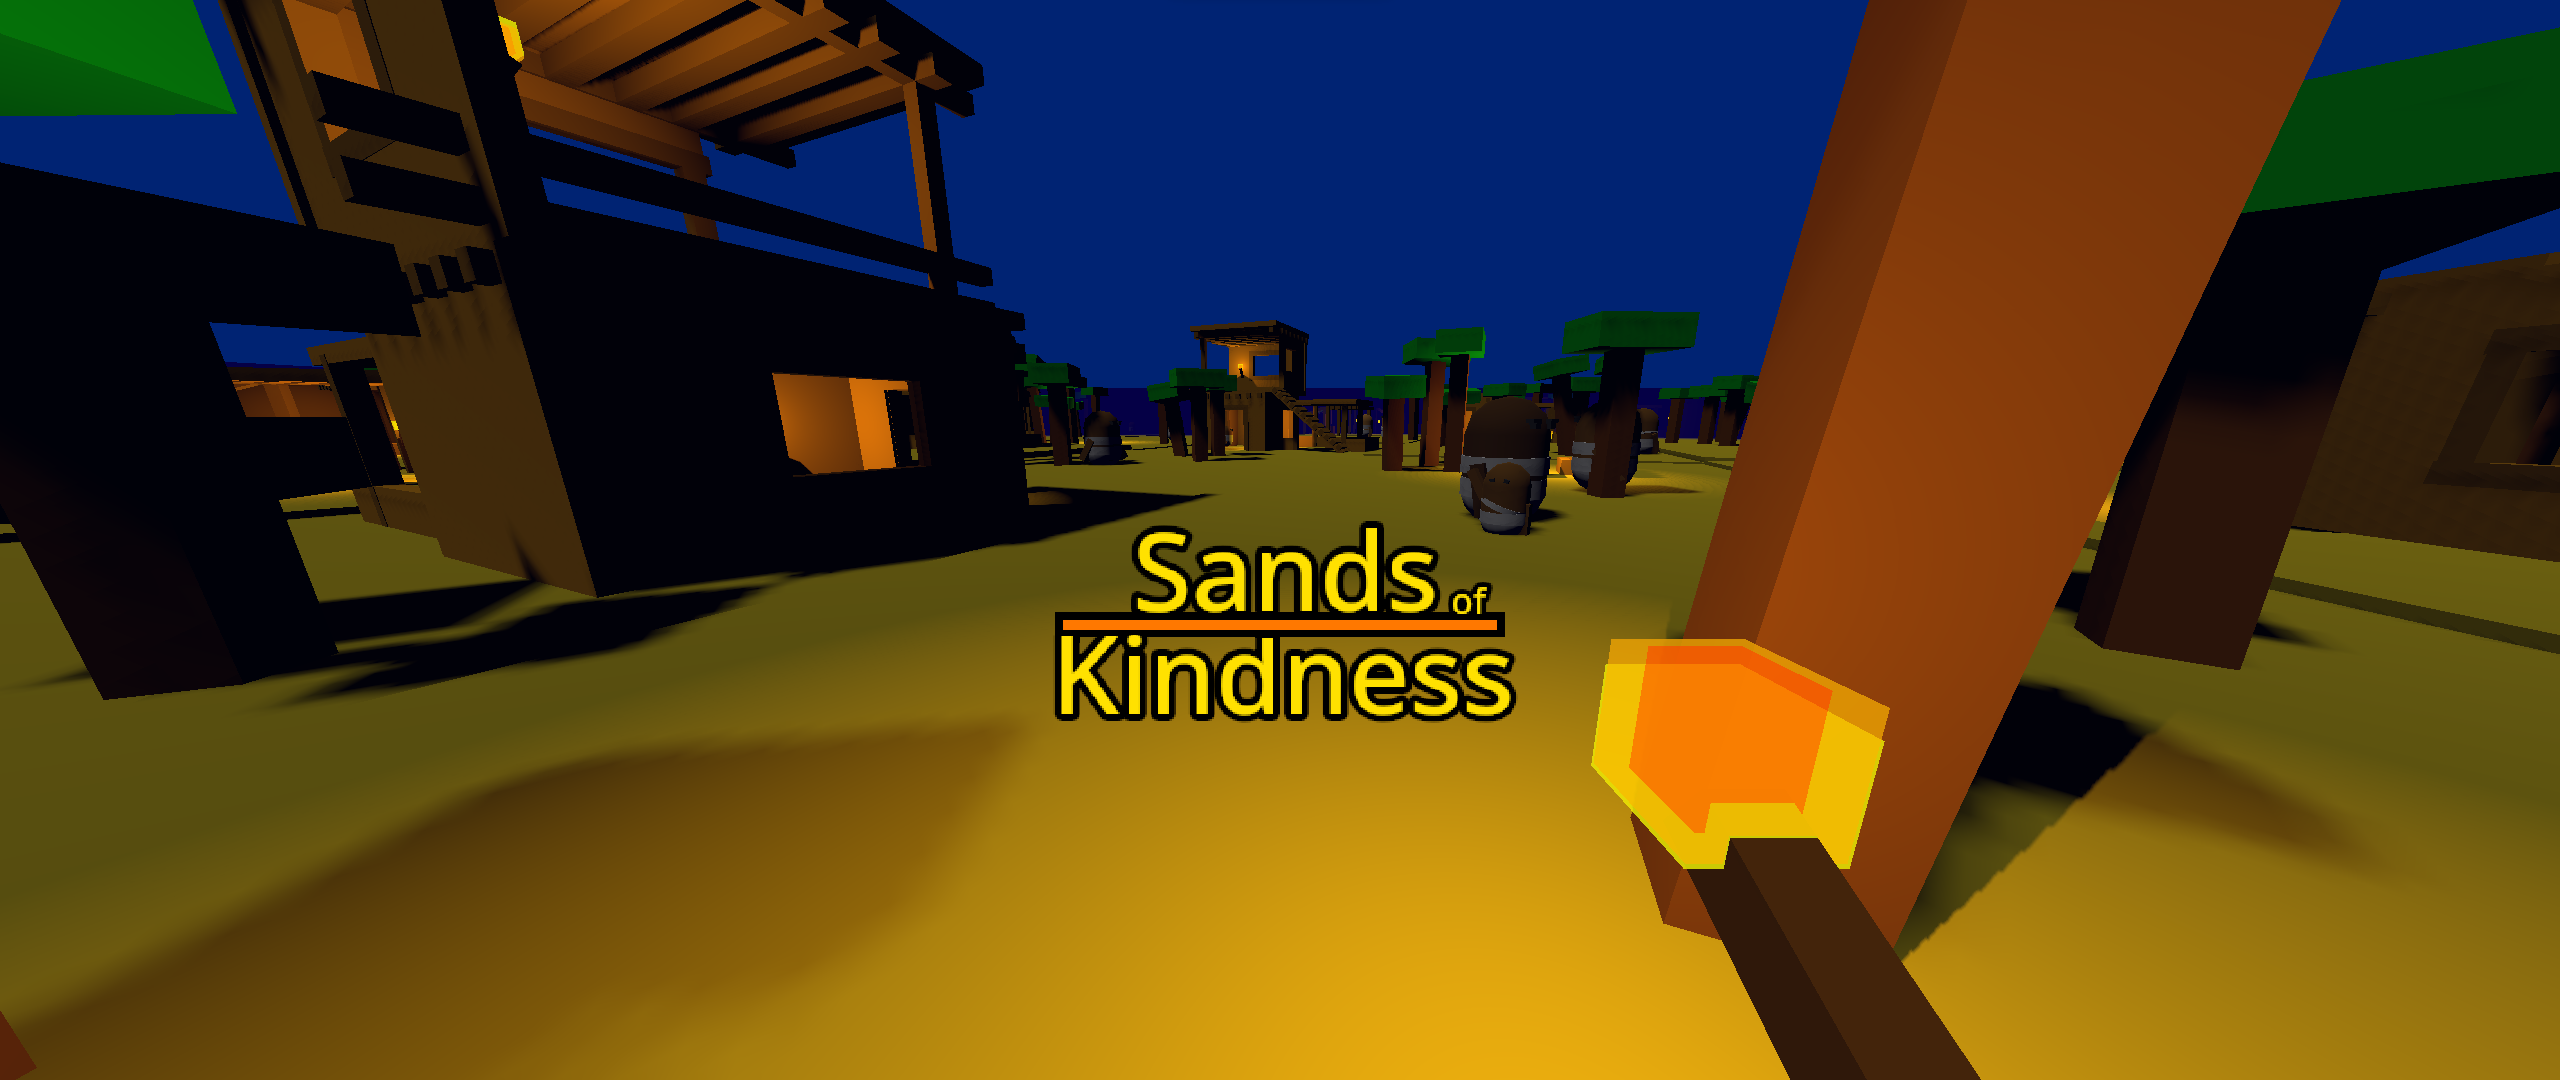 Sands of Kindness